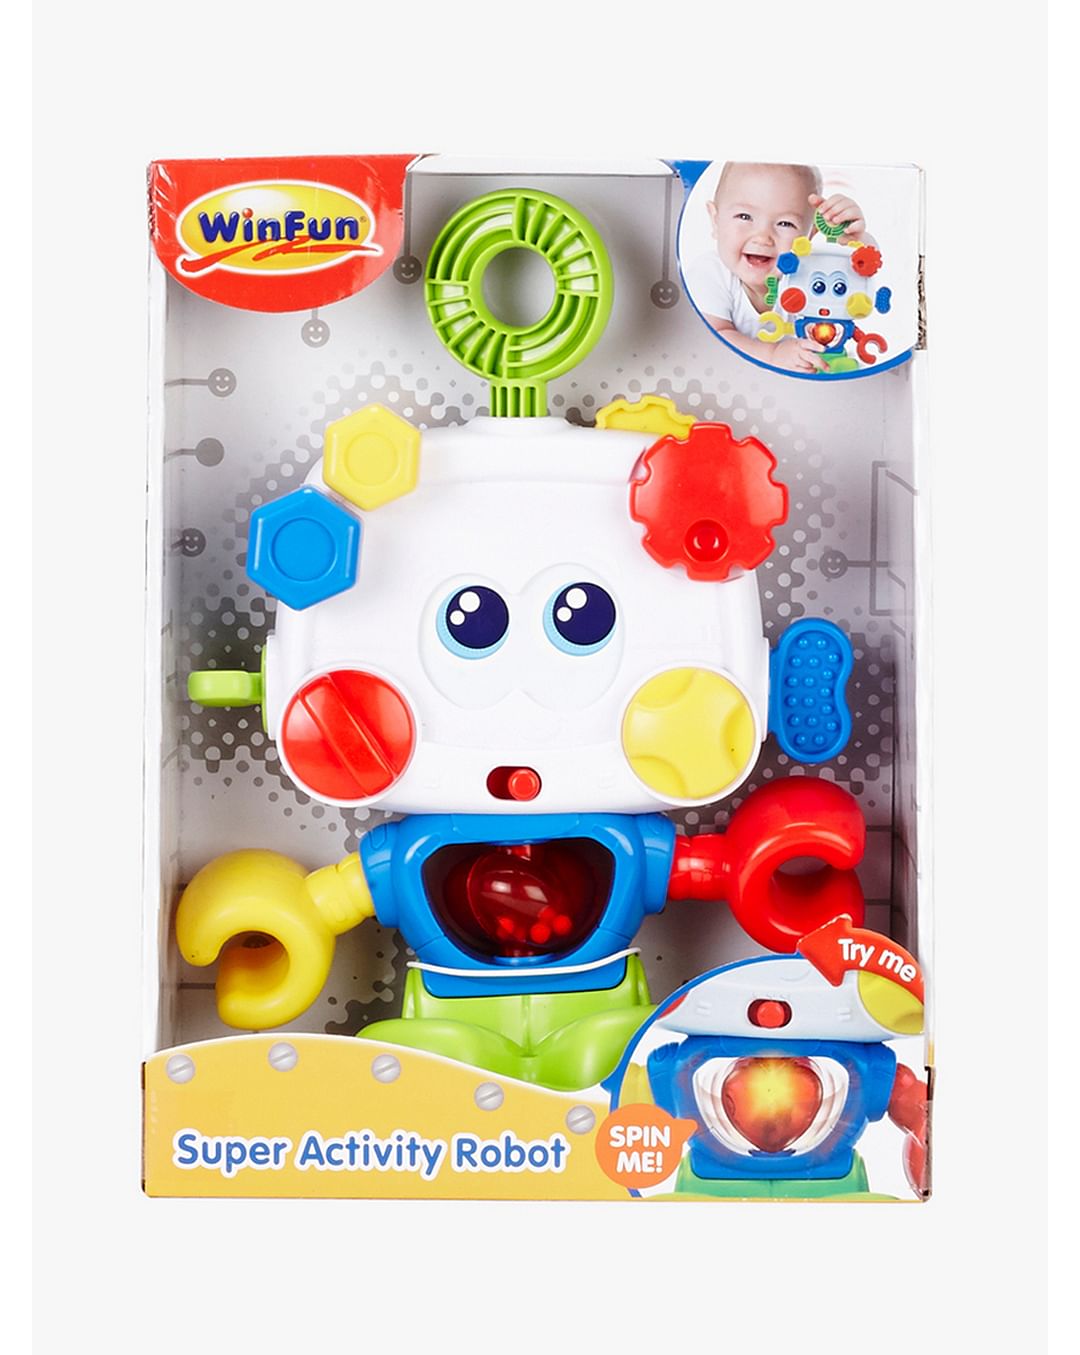 Winfun Super Activity Robot